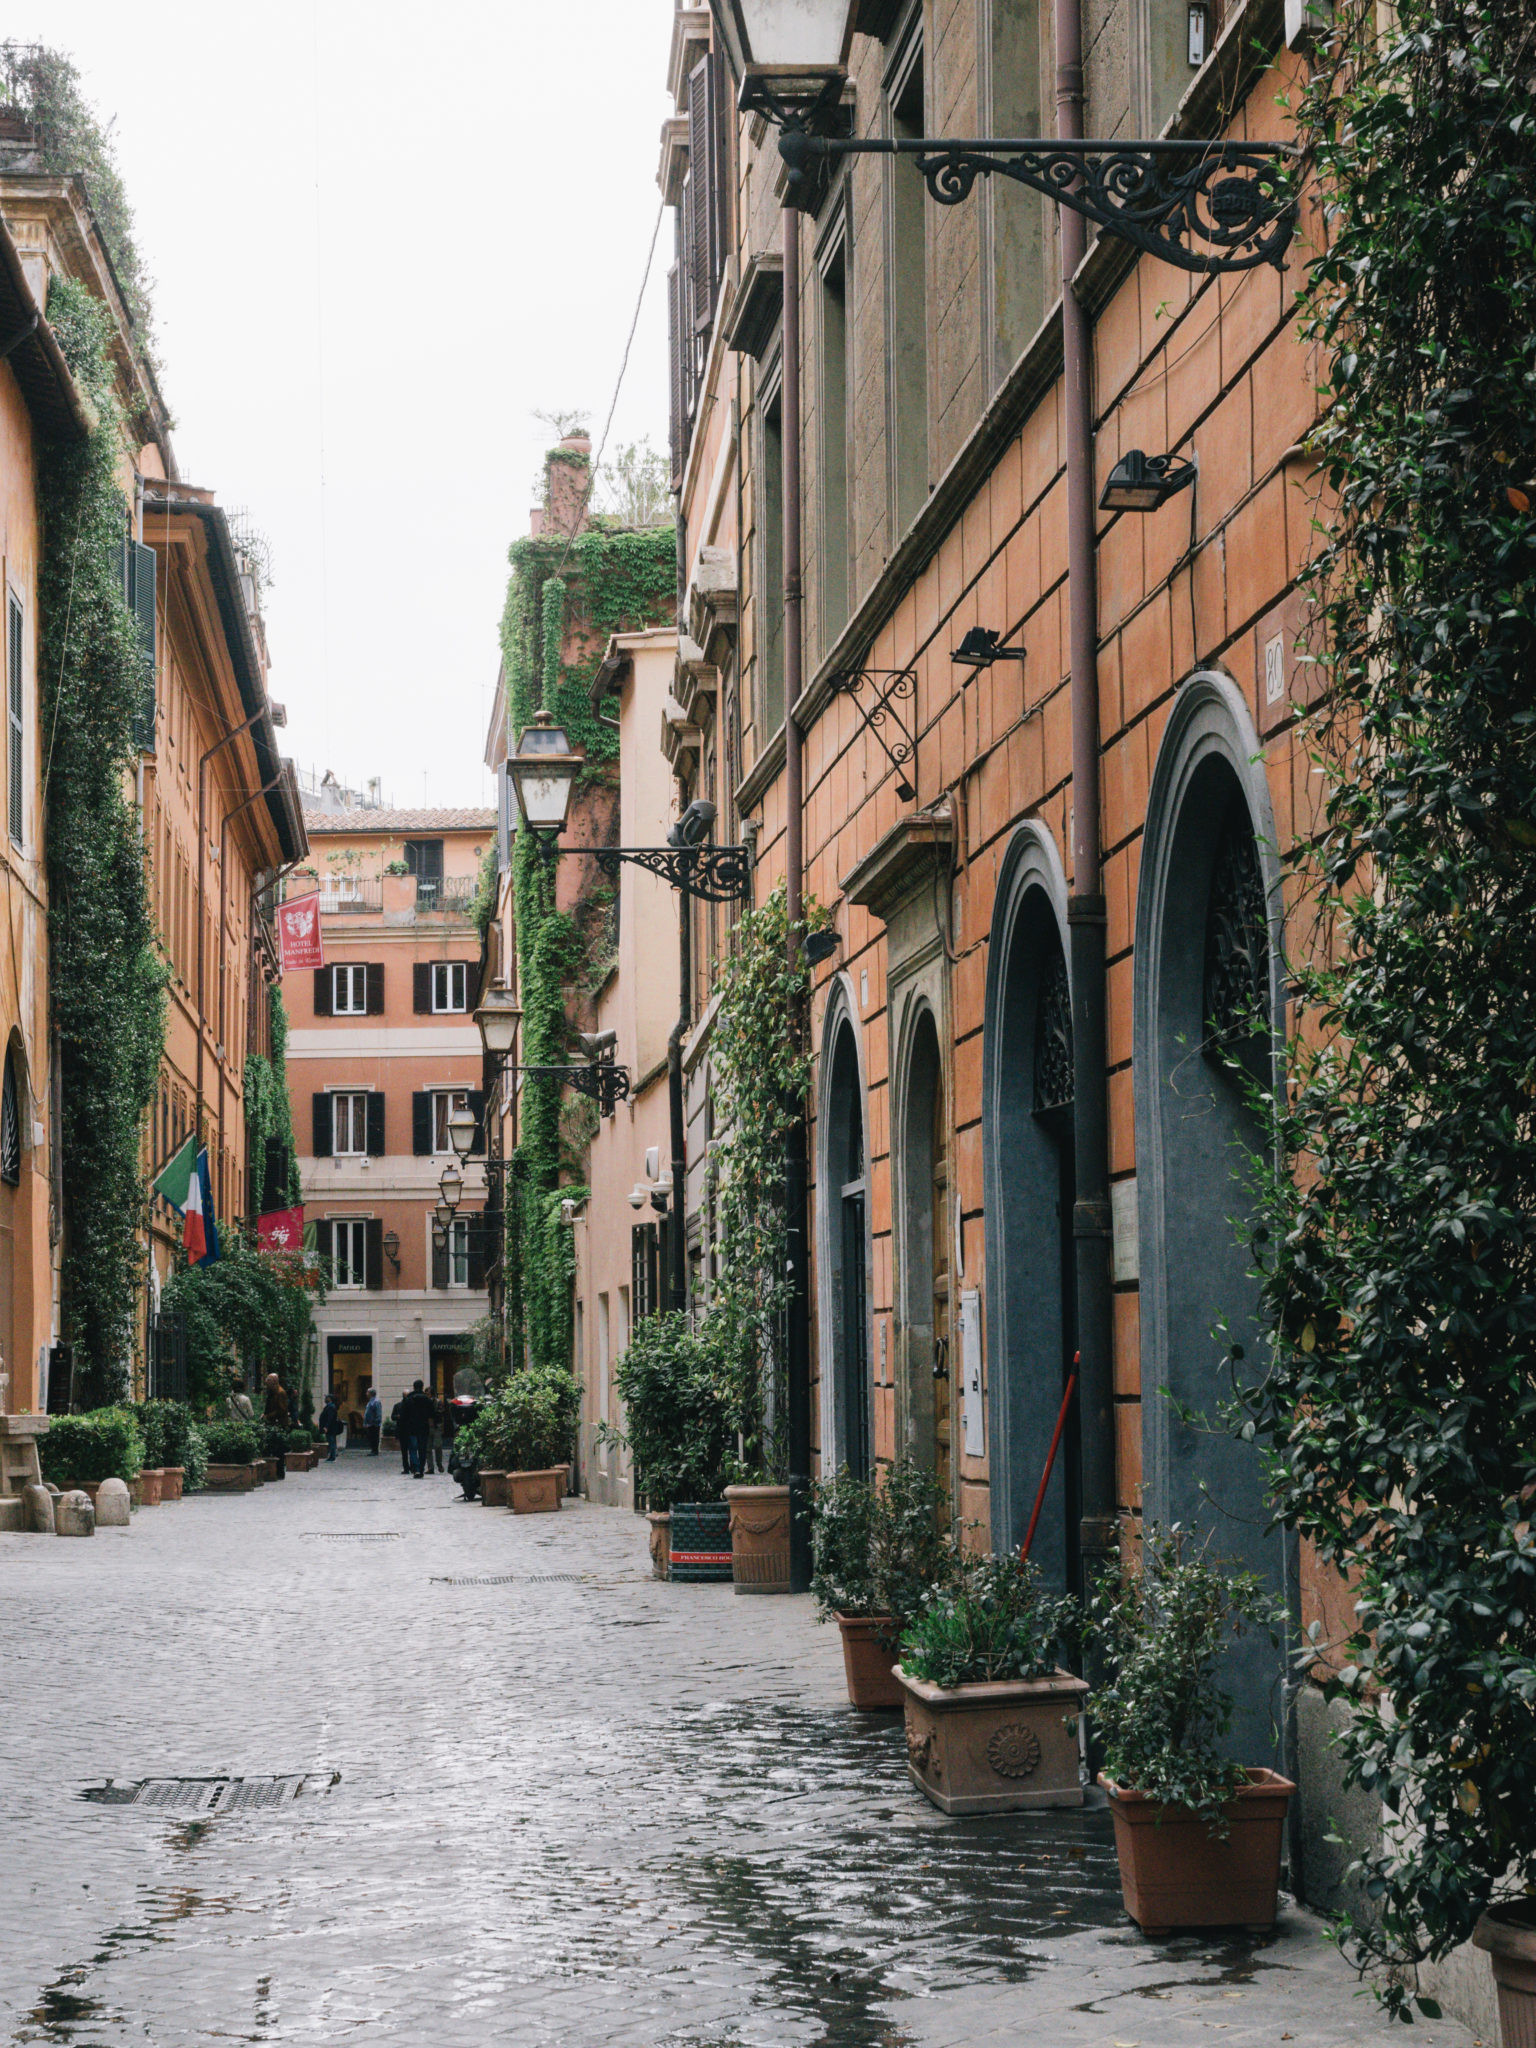 The best secret spots in Rome | WORLD OF WANDERLUST